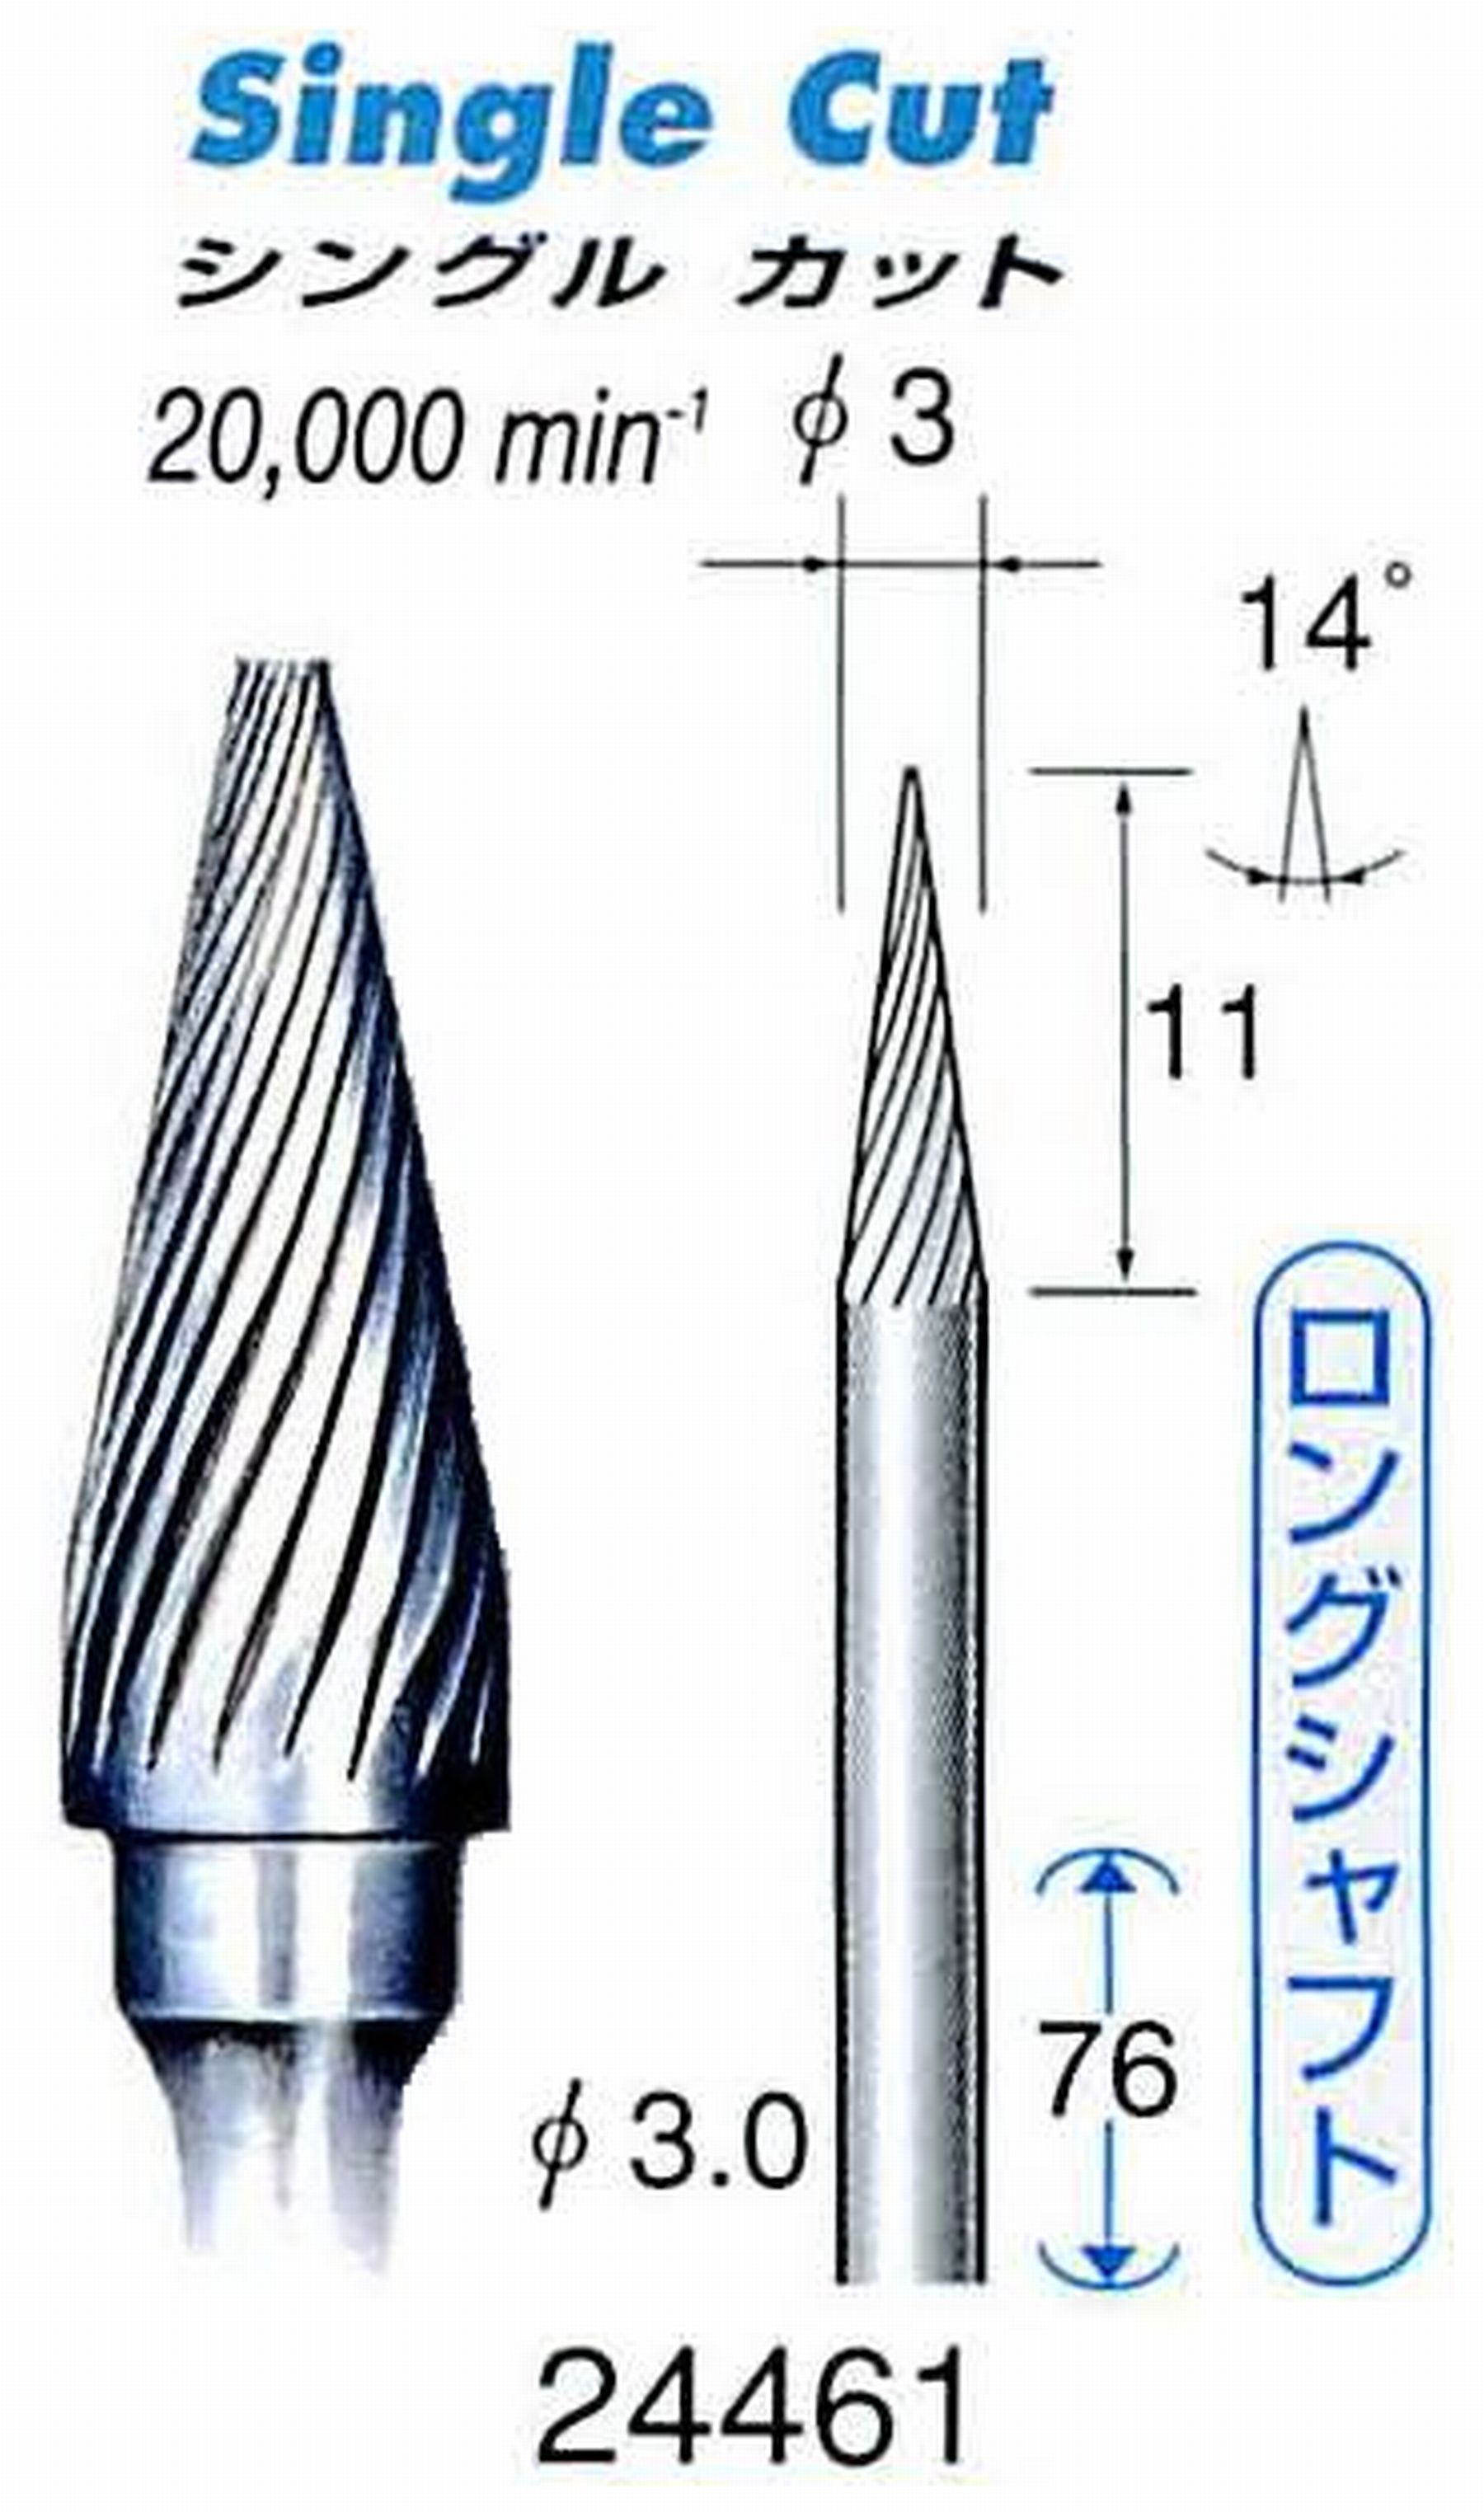 ナカニシ/NAKANISHI 超硬カッター(ロングシャフト) 軸径(シャンク)φ3.0mm 24461